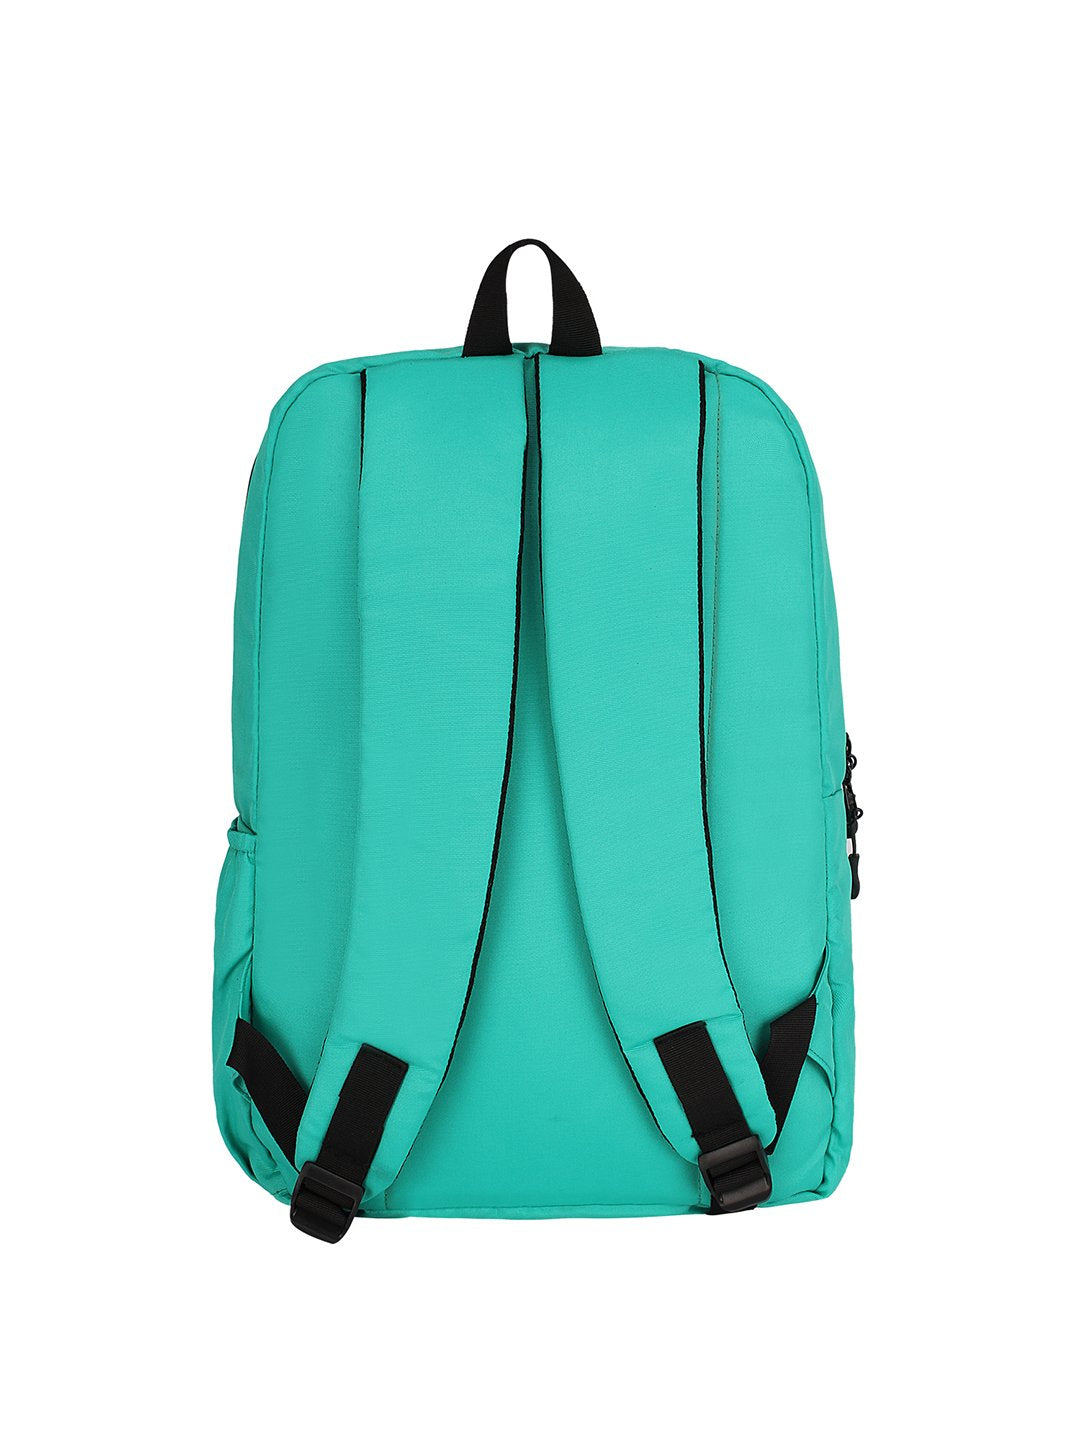 Herbie Gaming: School Bag for Girls, School Bag for Boys, School Bag ...